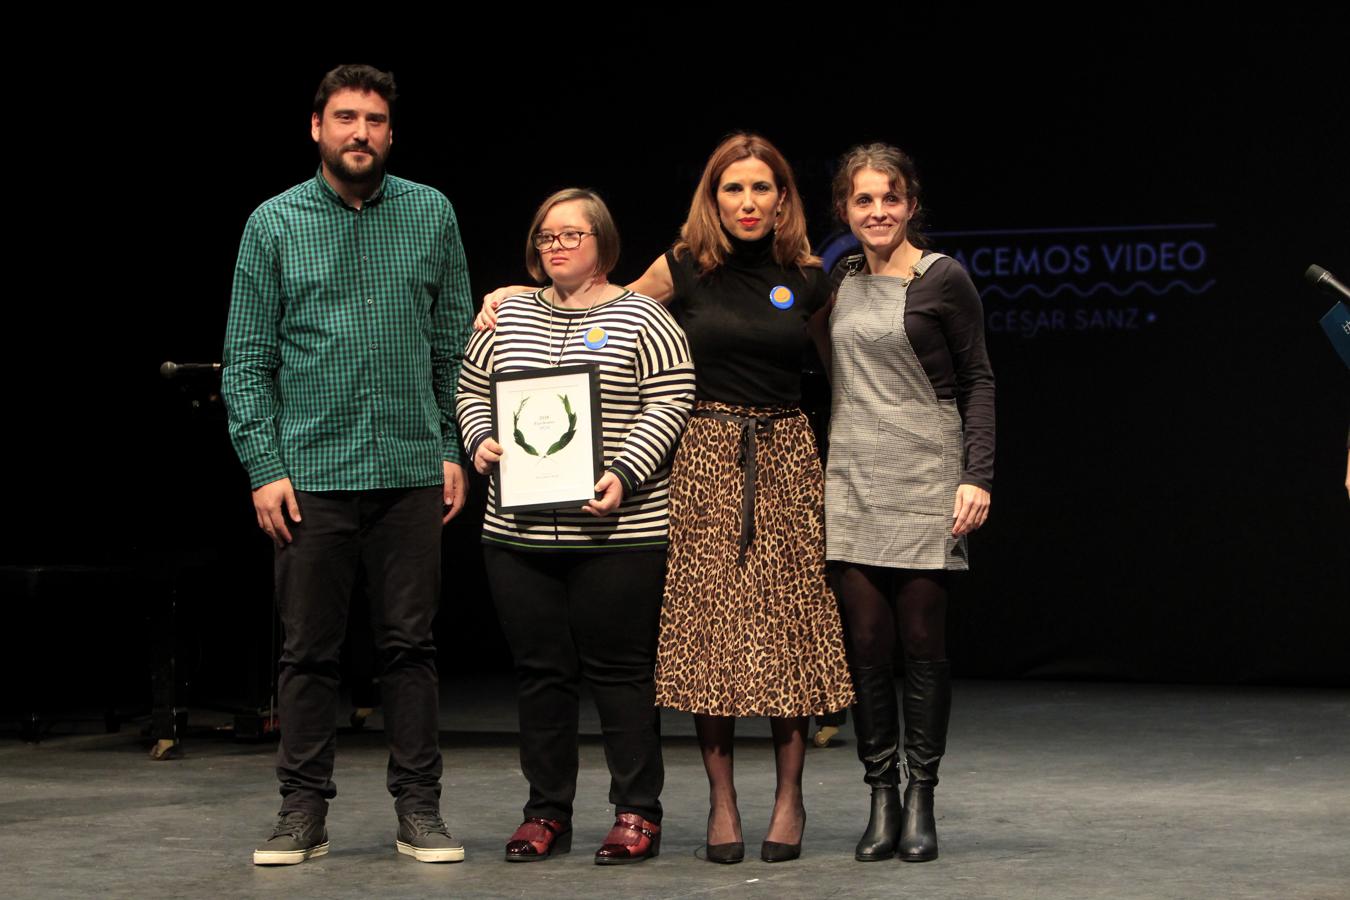 Encastillalamancha.es entrega los Premios «Excelentes» 2018